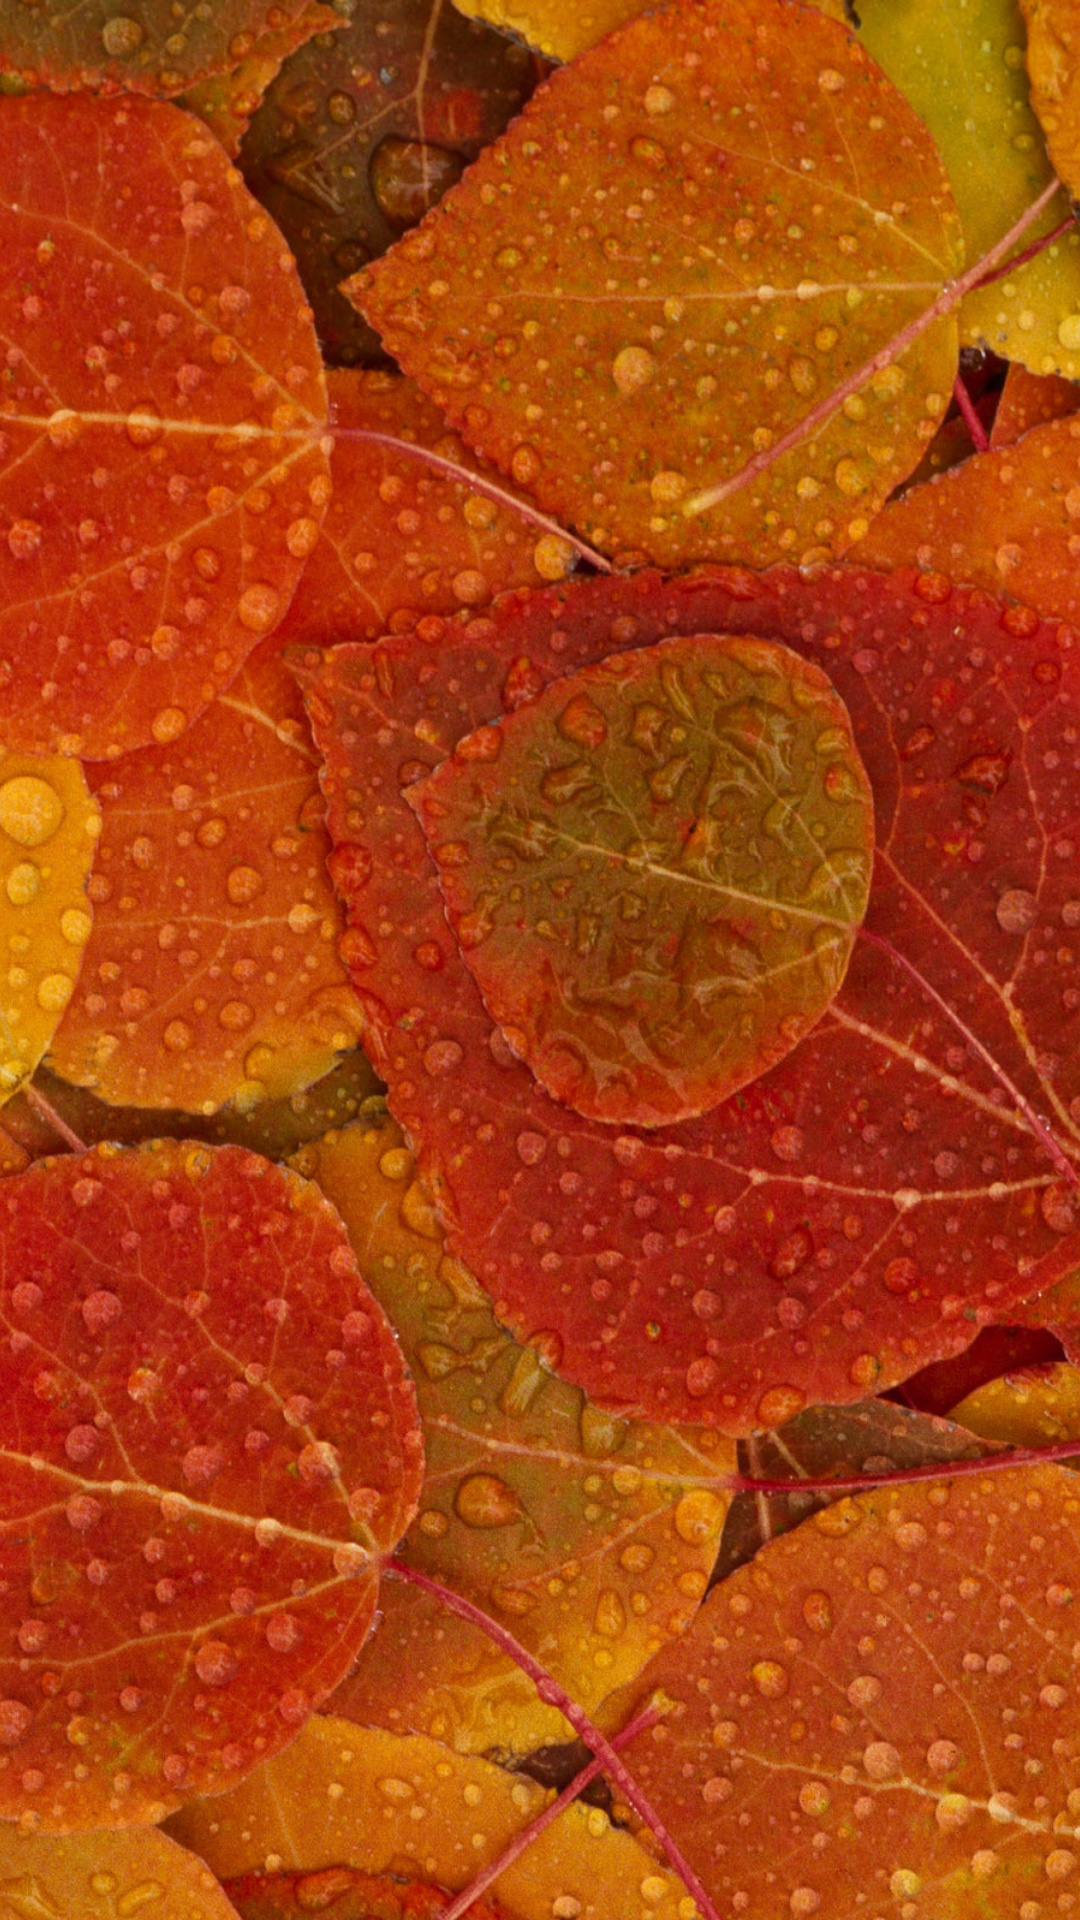 Das Autumn leaves with rain drops Wallpaper 1080x1920